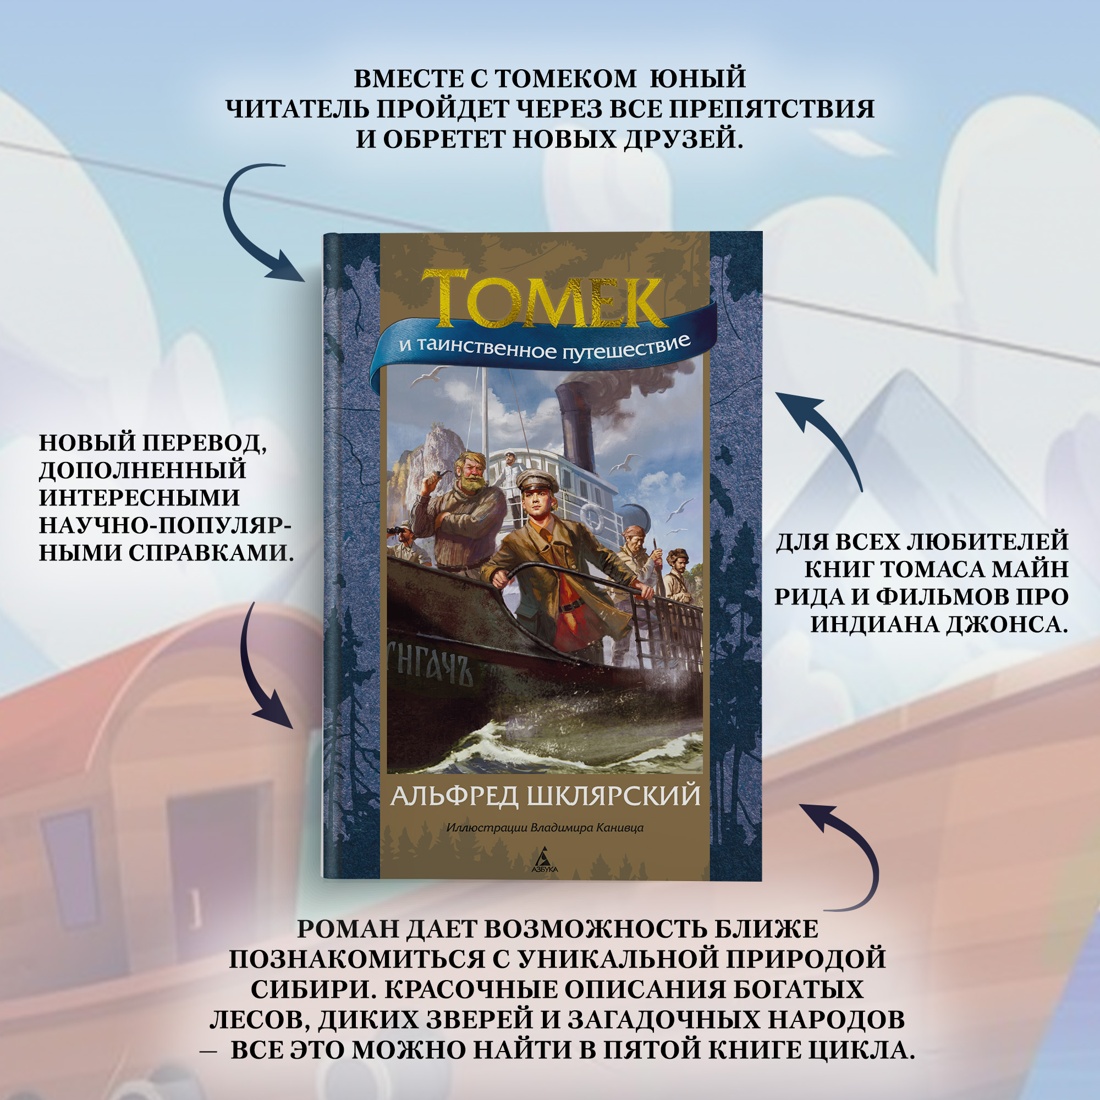 Промо материал к книге "Томек и таинственное путешествие" №1